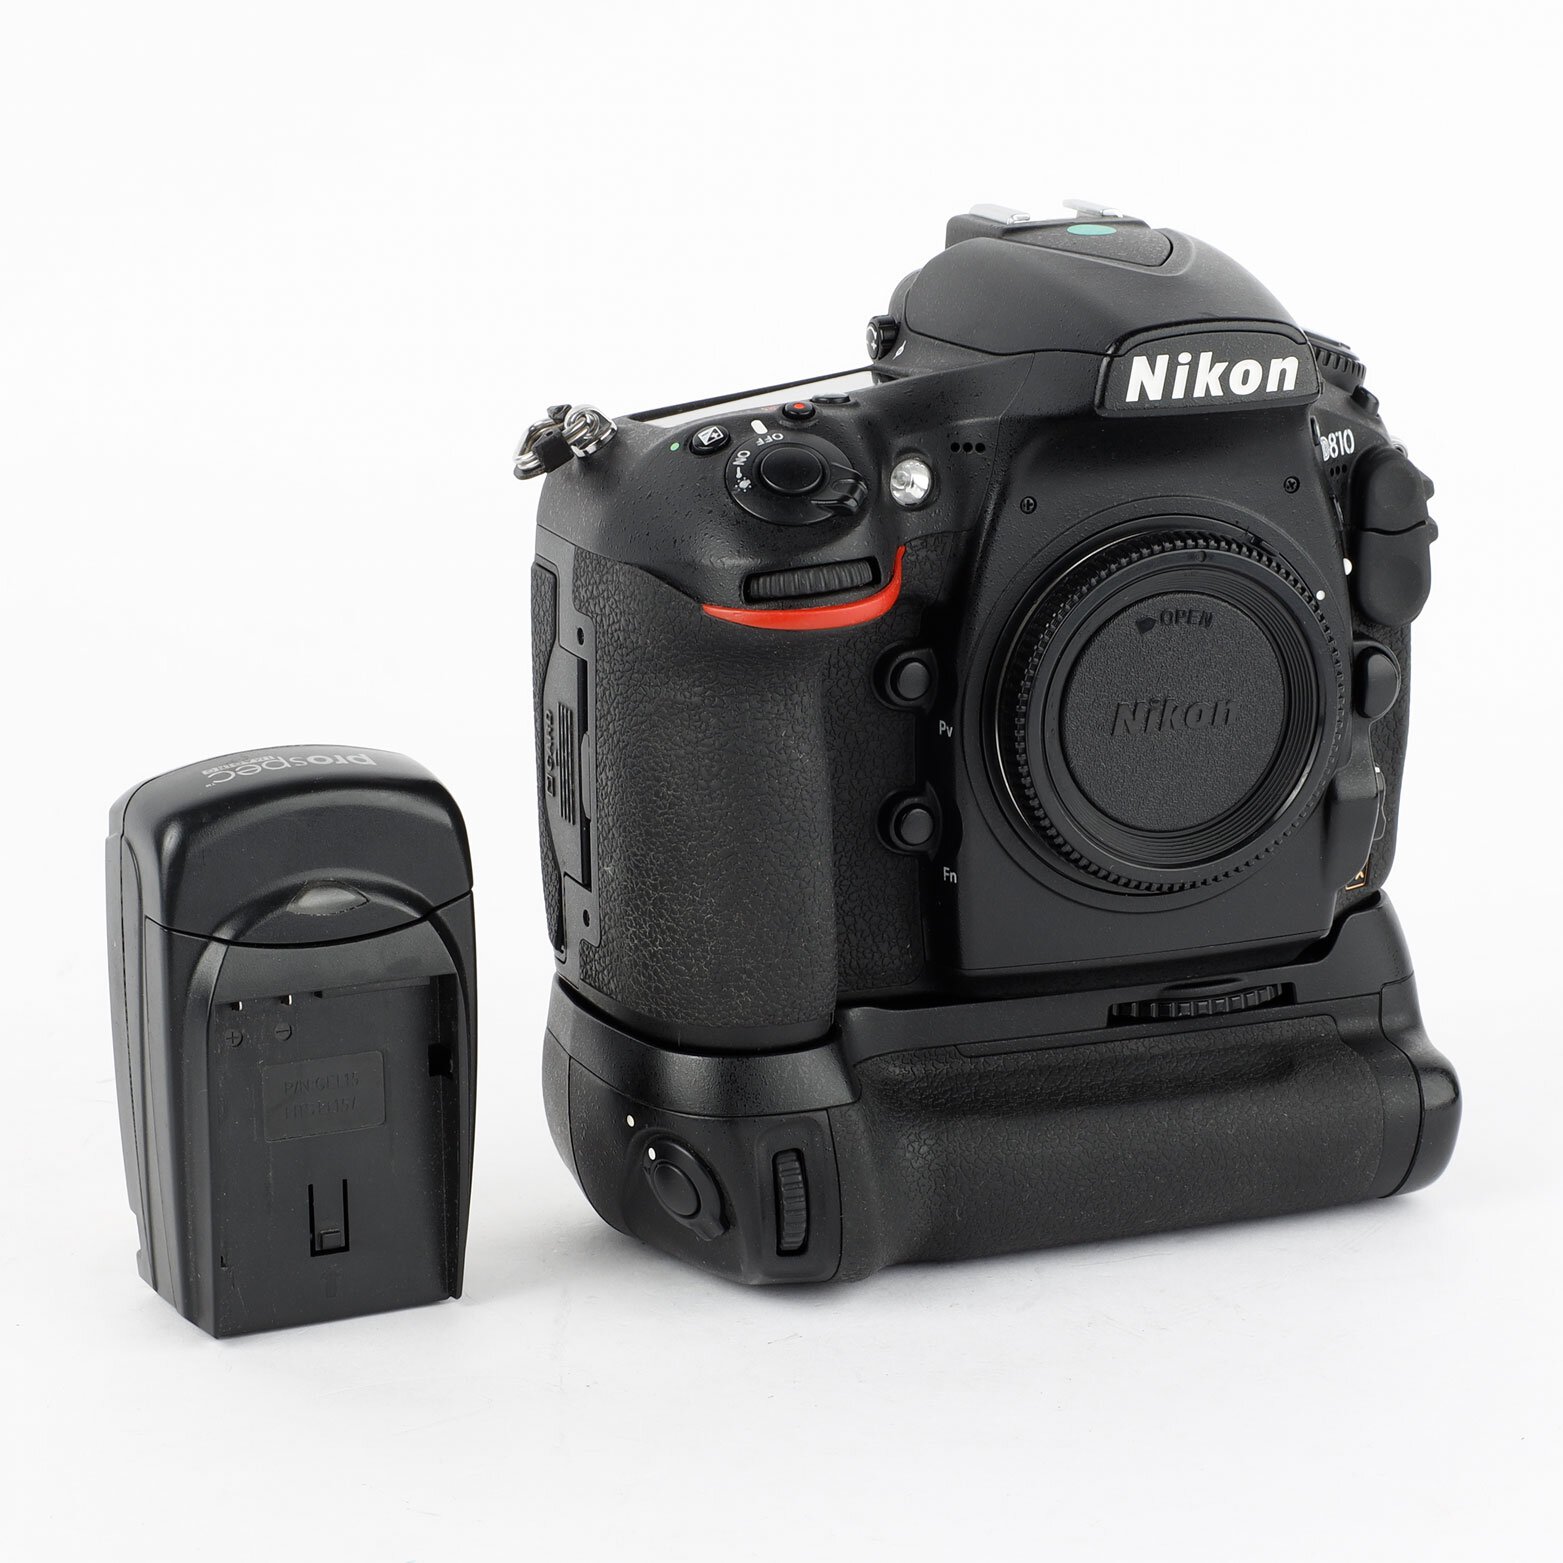 Nikon D810 Gehäuse ca. 154000 Auslösungen inkl. MB-D12 Batteriegriff